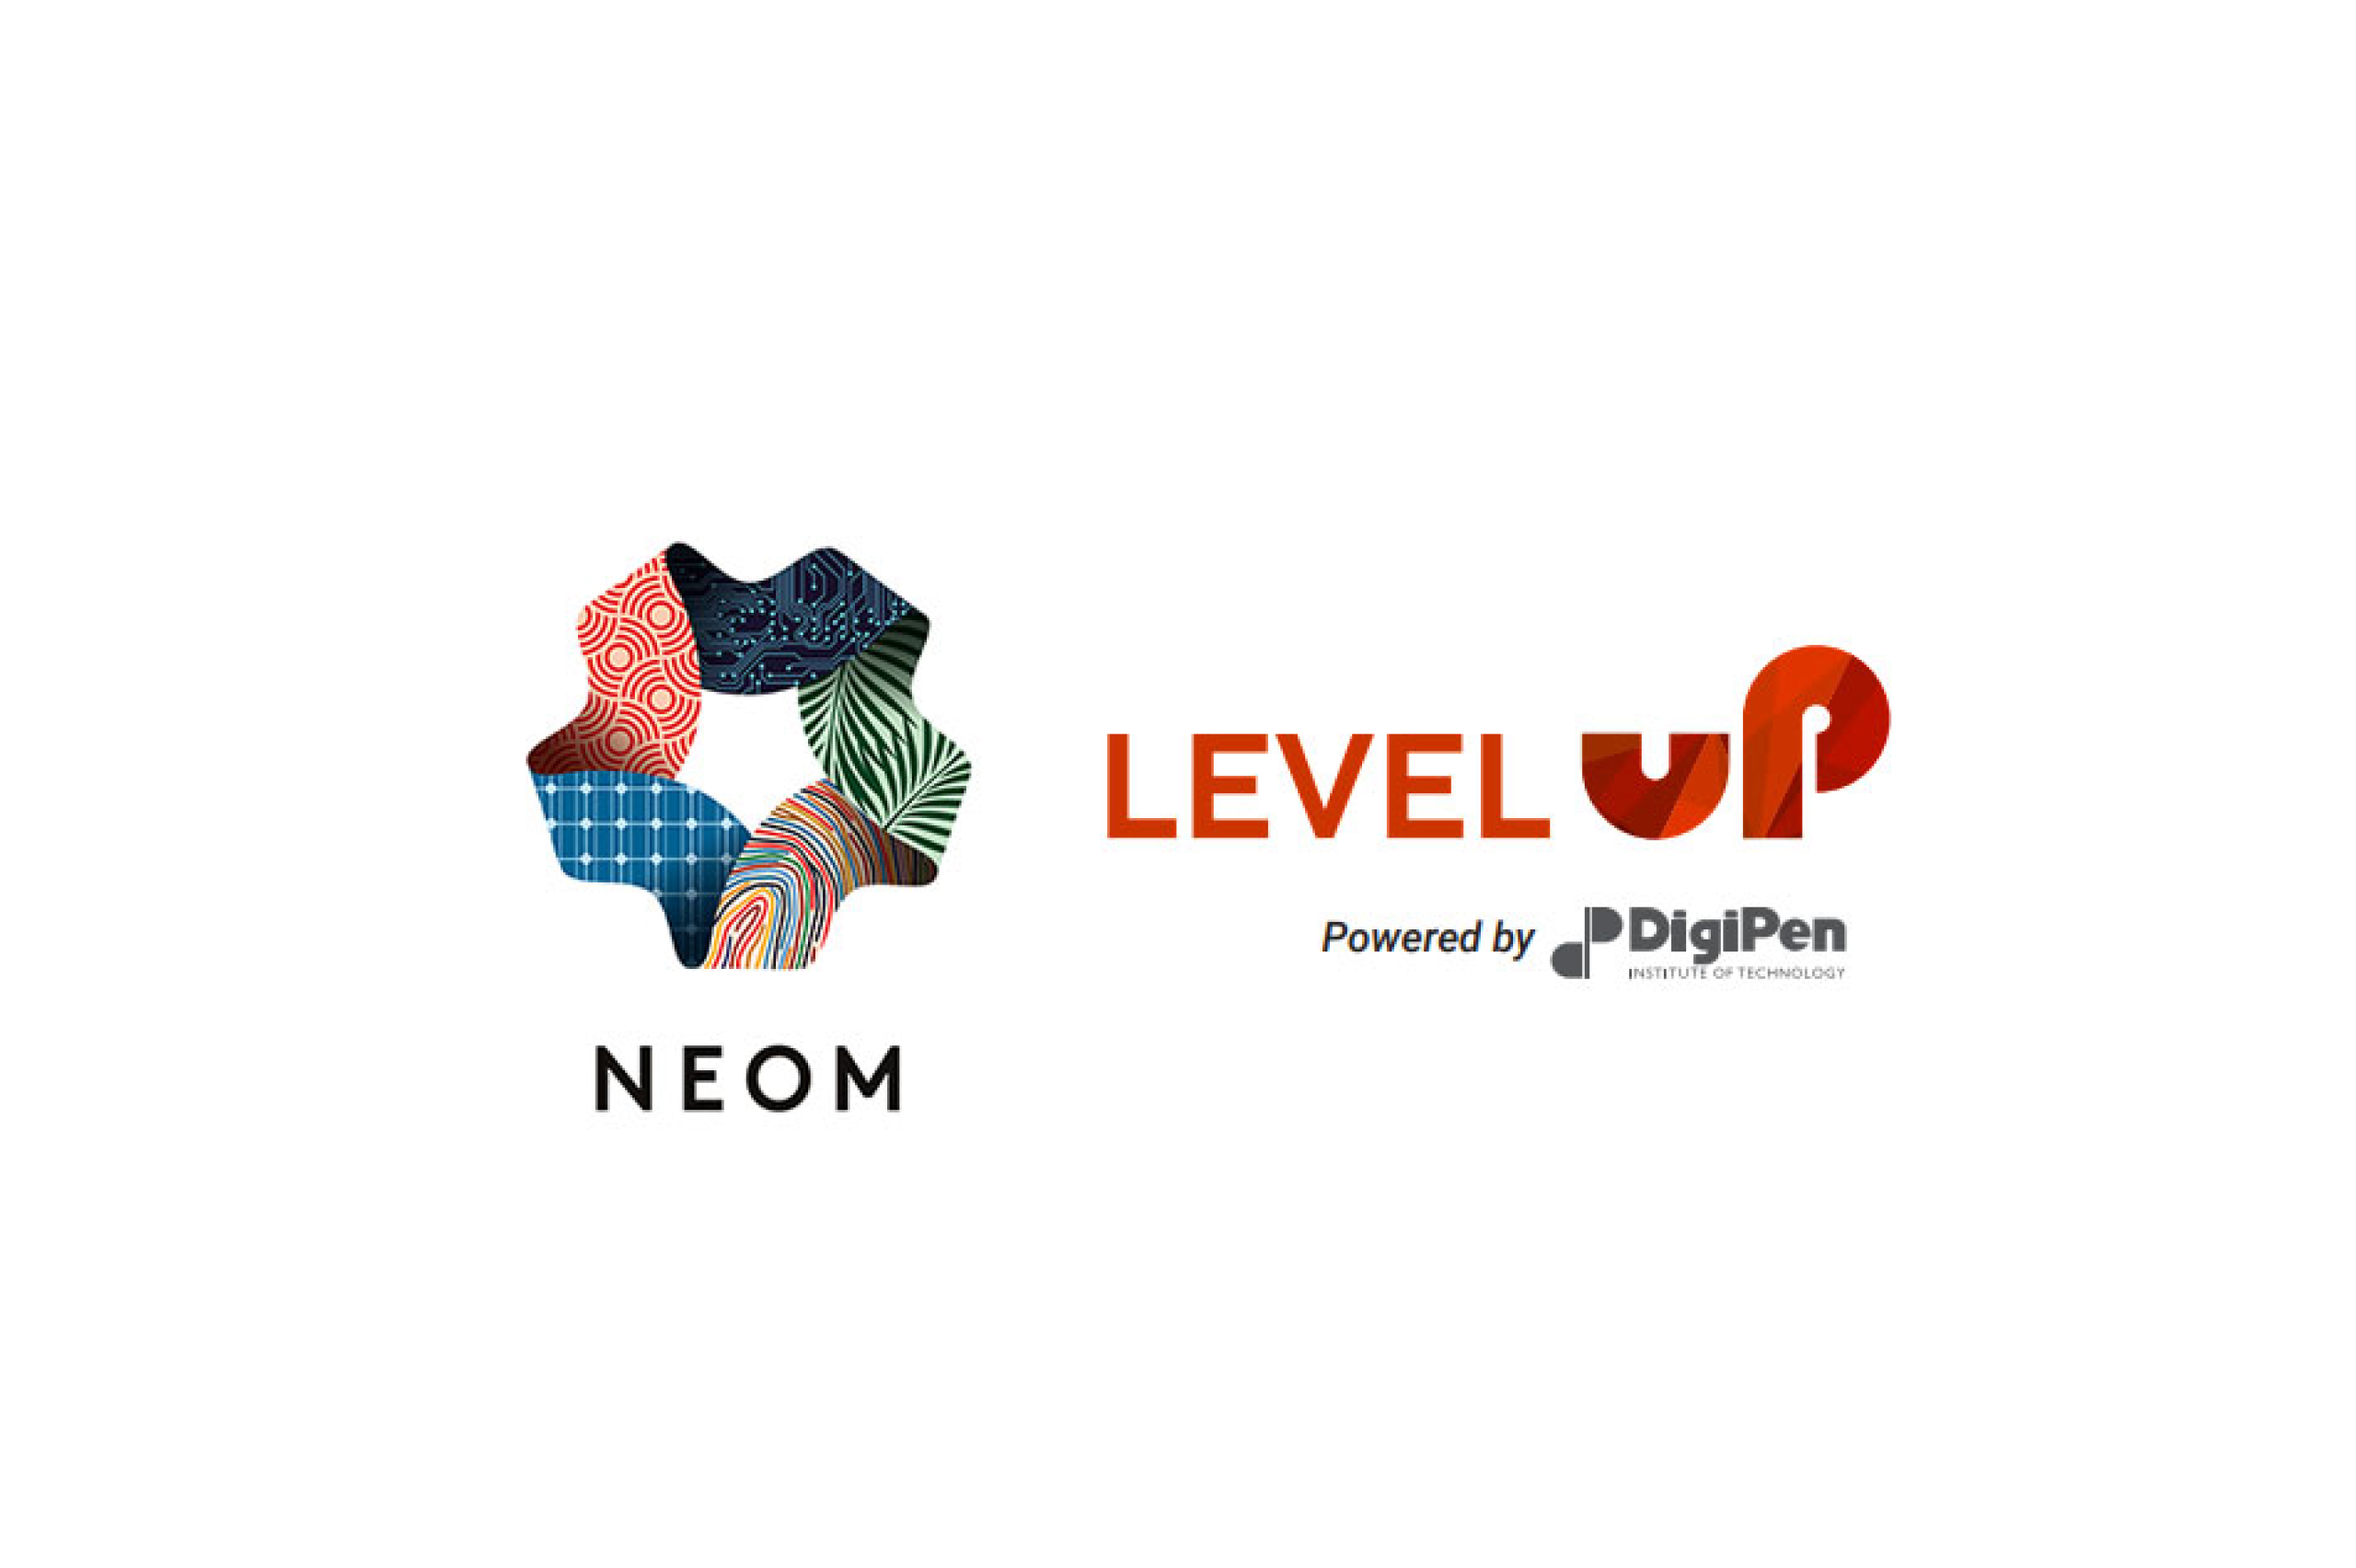 NEOM Level Up Gaming Accelerator Program Start